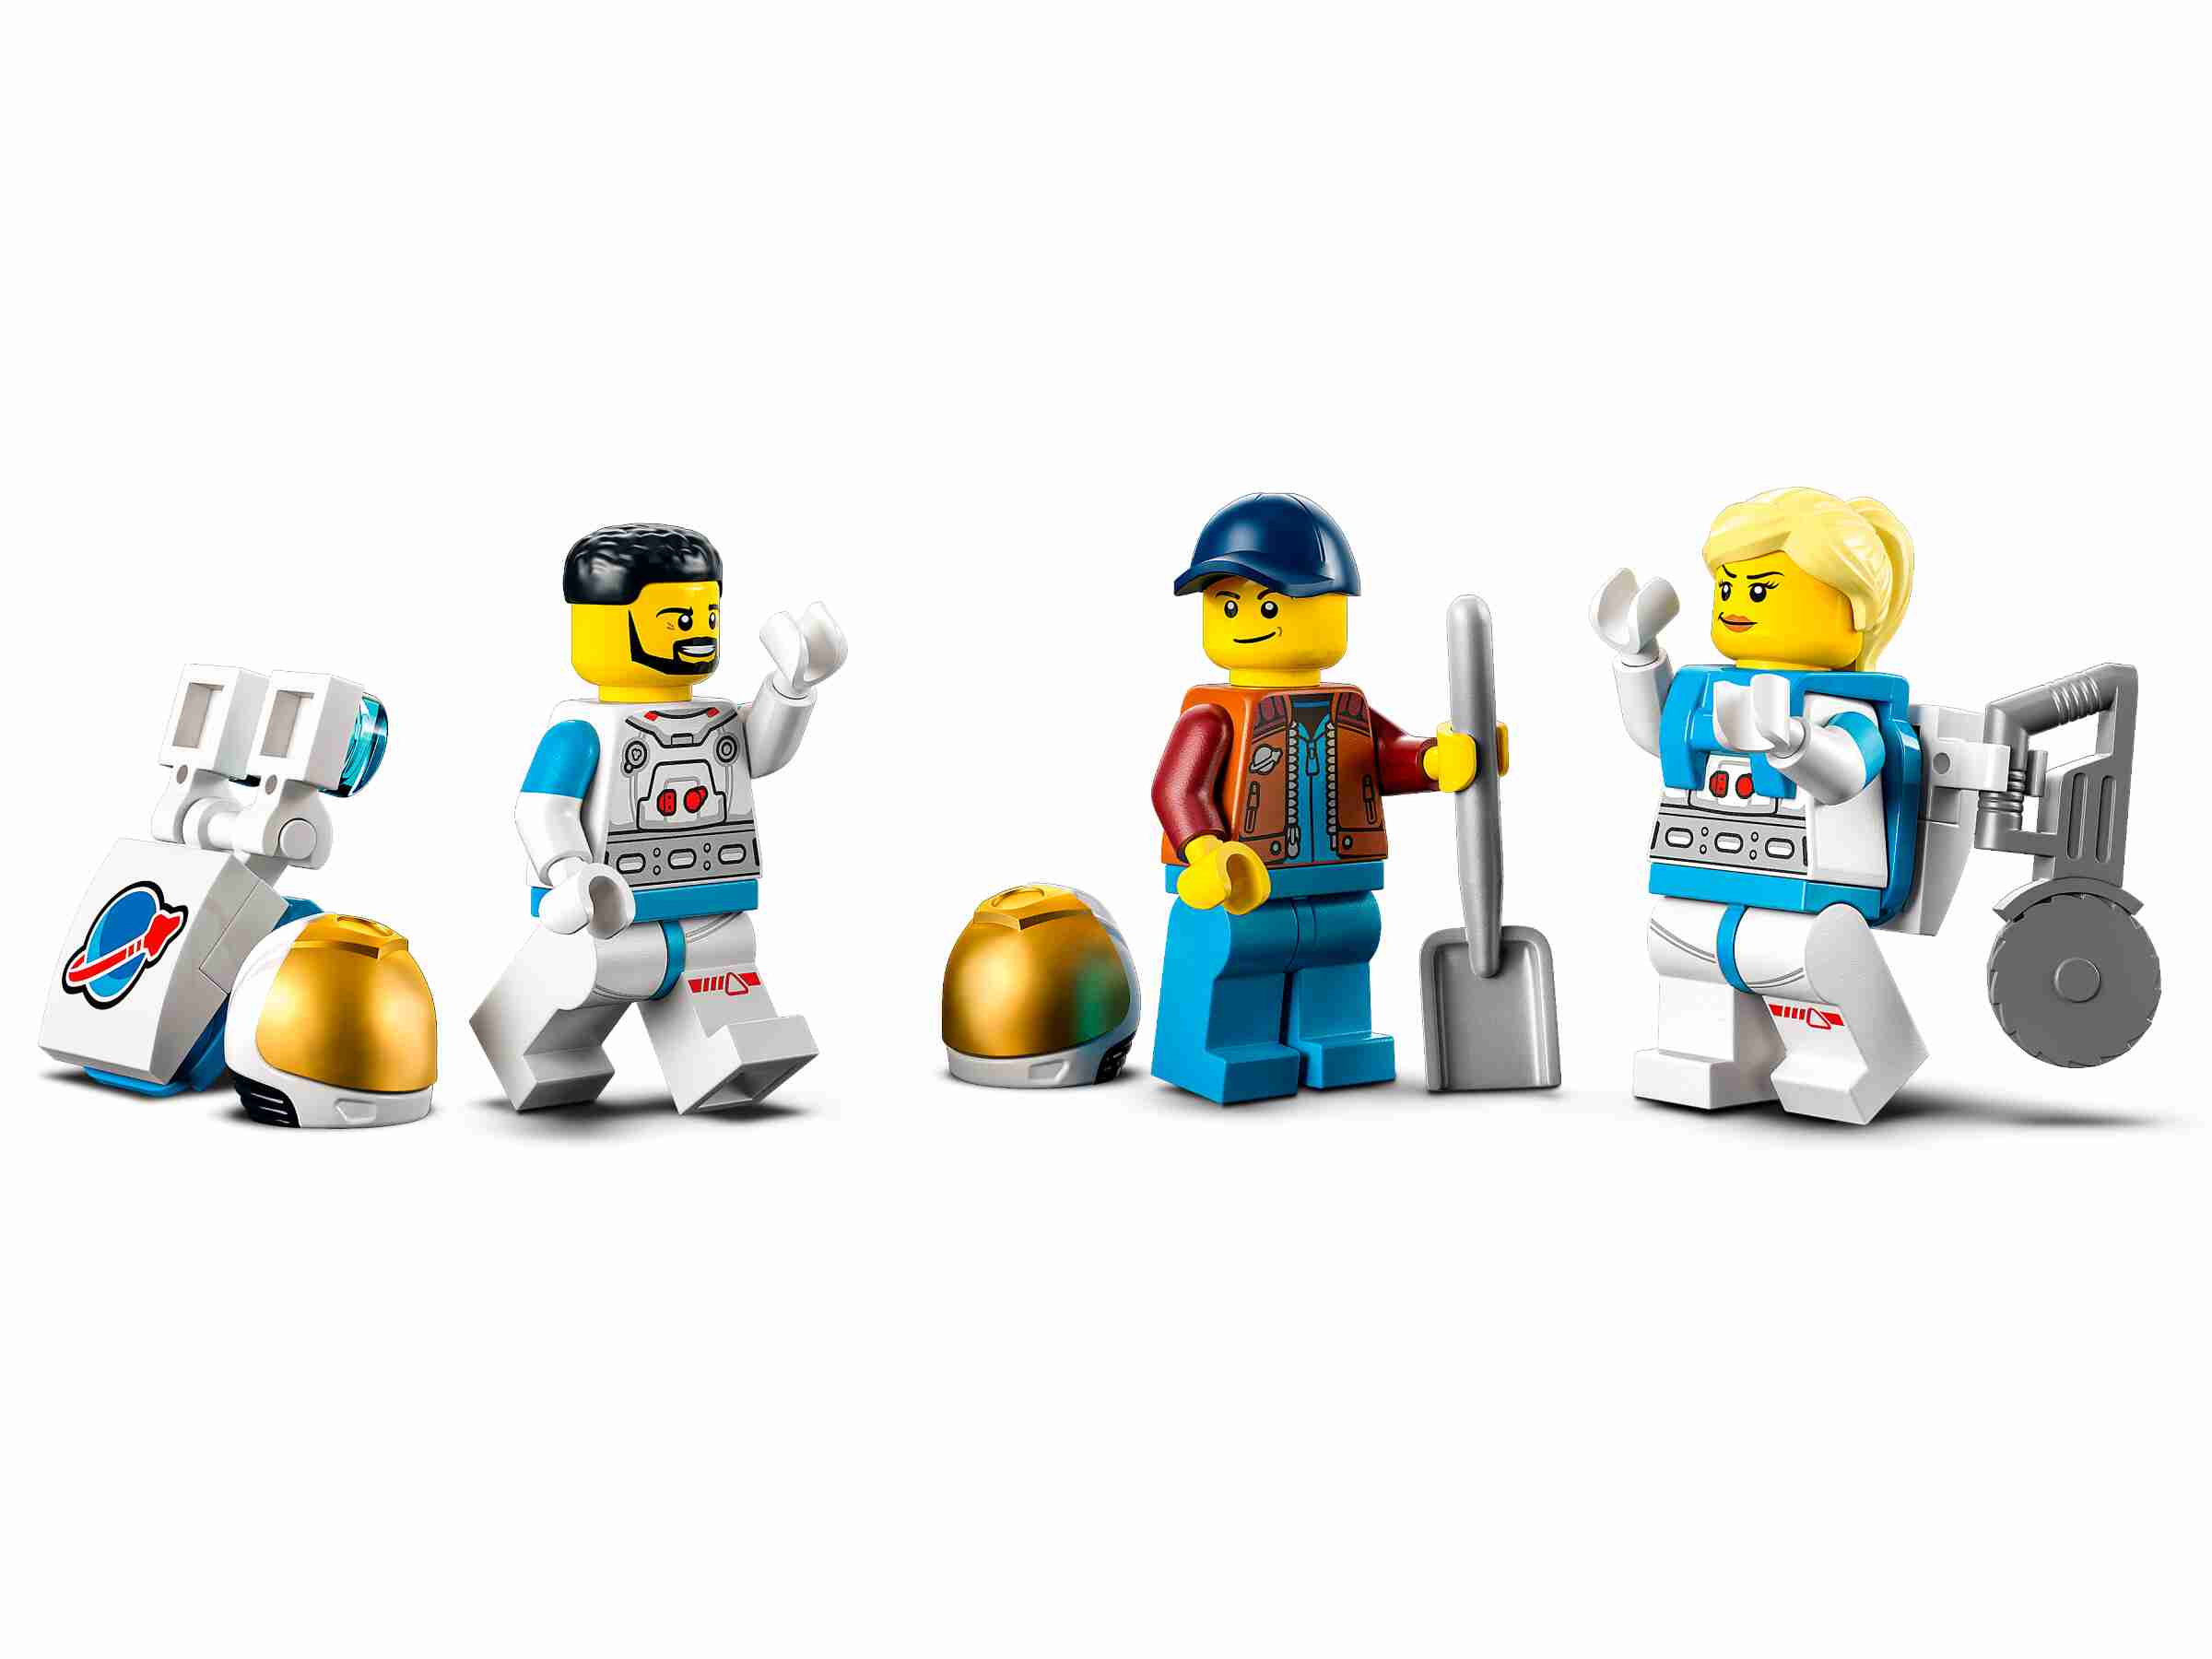 LEGO 60348 City Mond-Rover, 3 Astronauten-Minifiguren, Meteorit